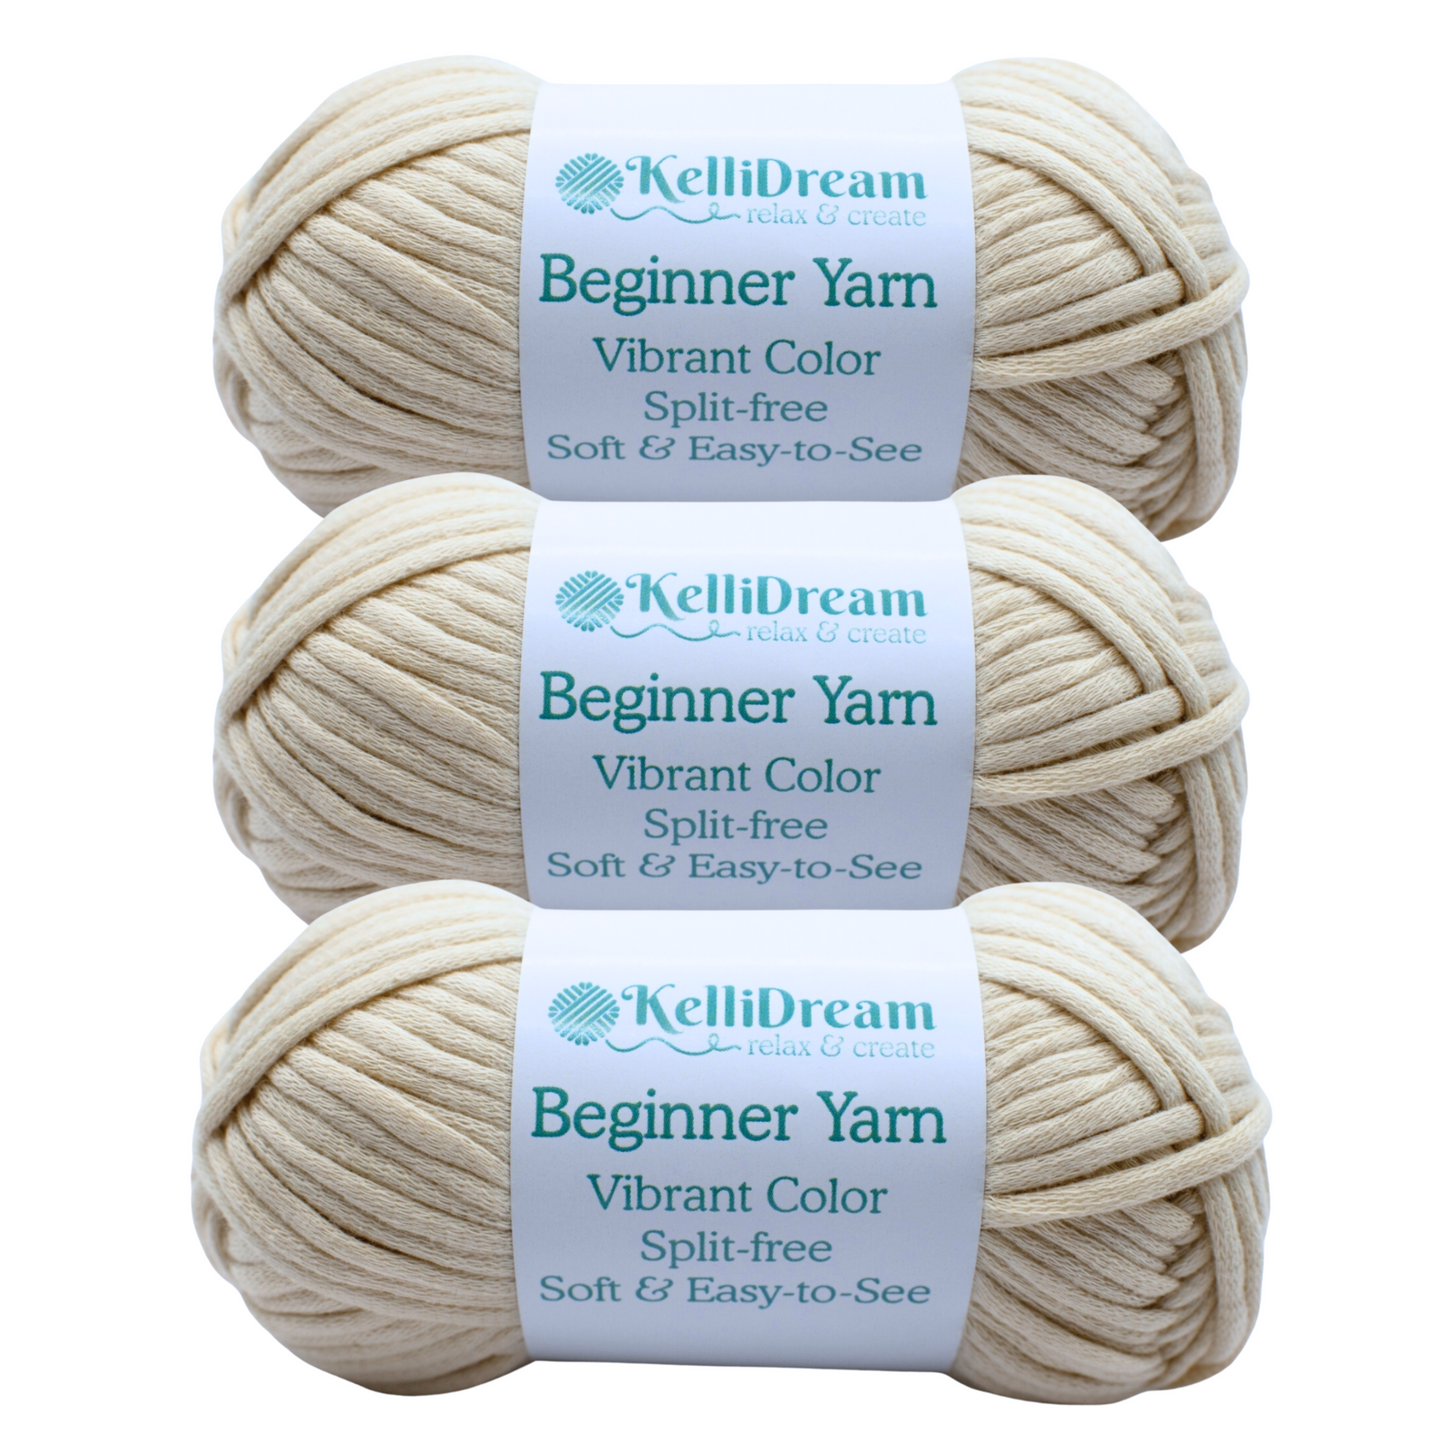 KelliDream Learn to Crochet for Beginners Kit